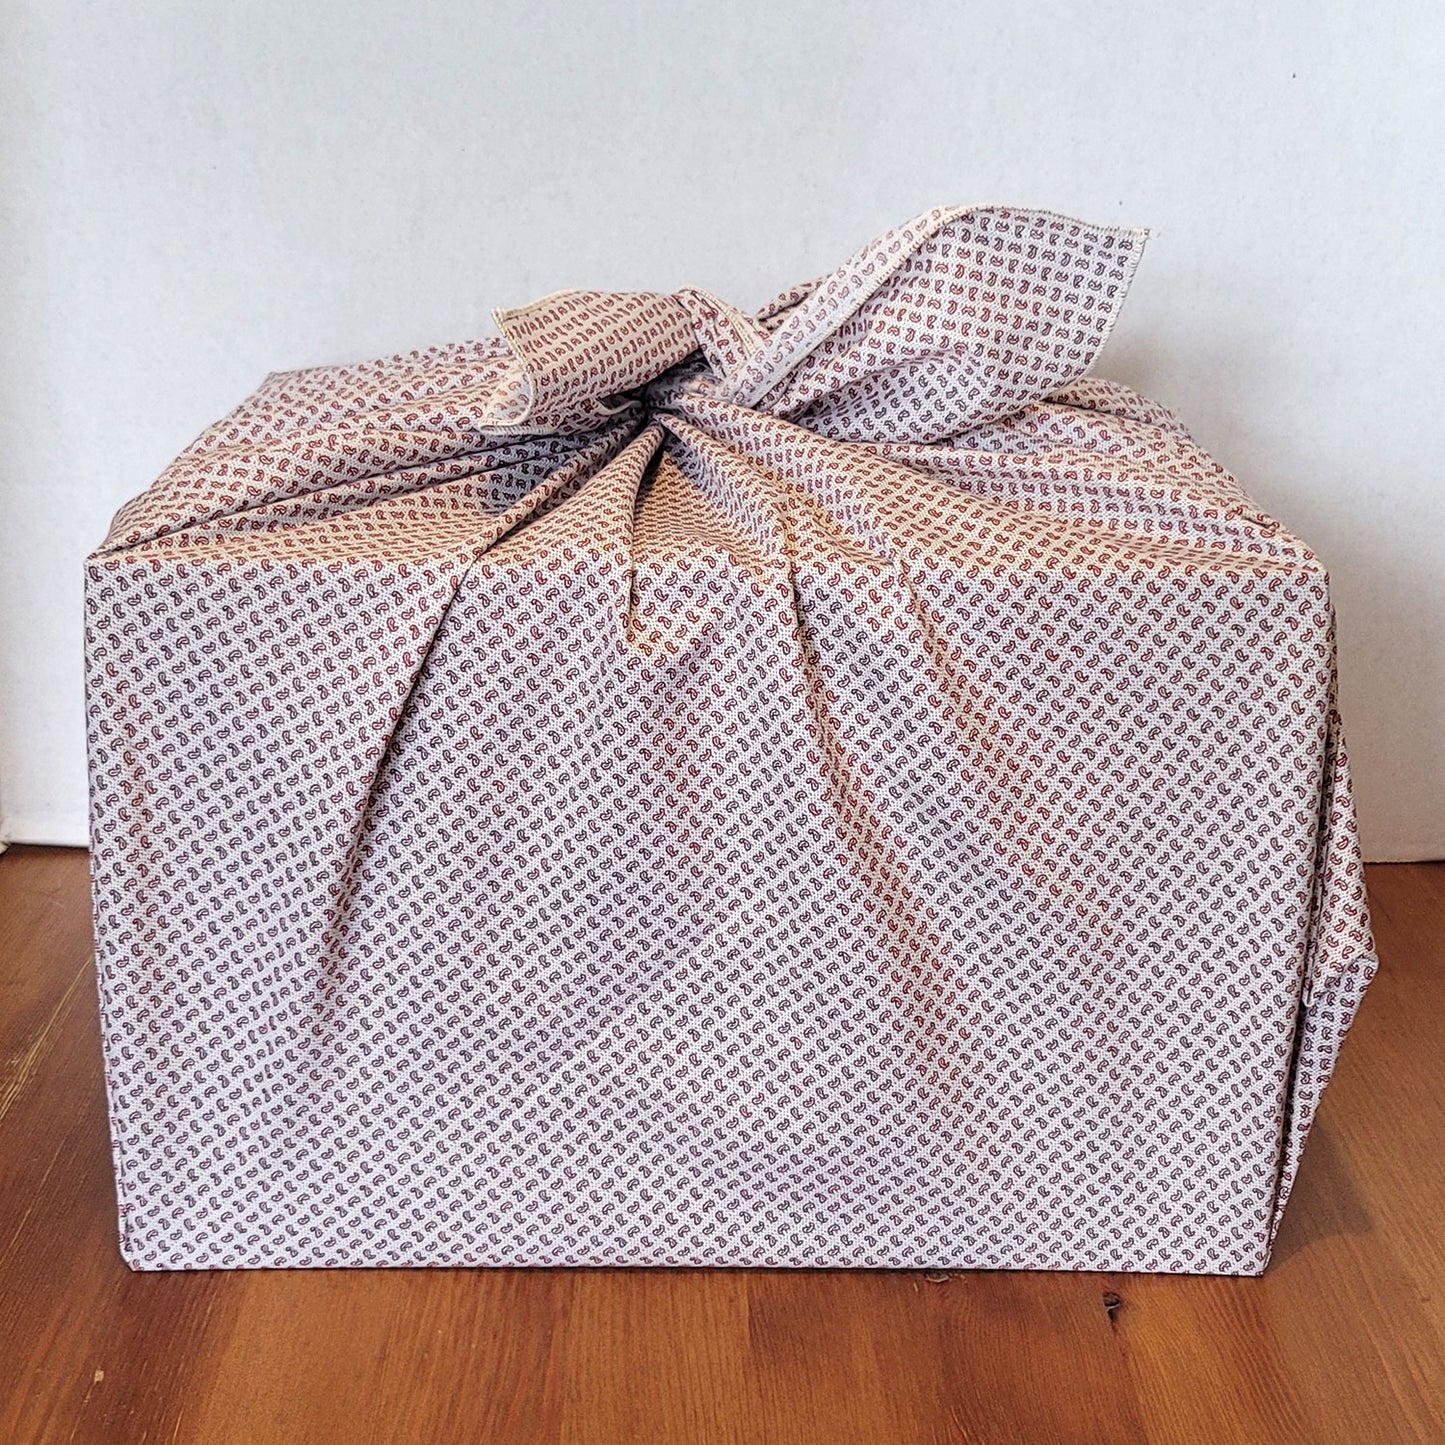 Upcycled Reusable Gift Wrap (Furoshiki)